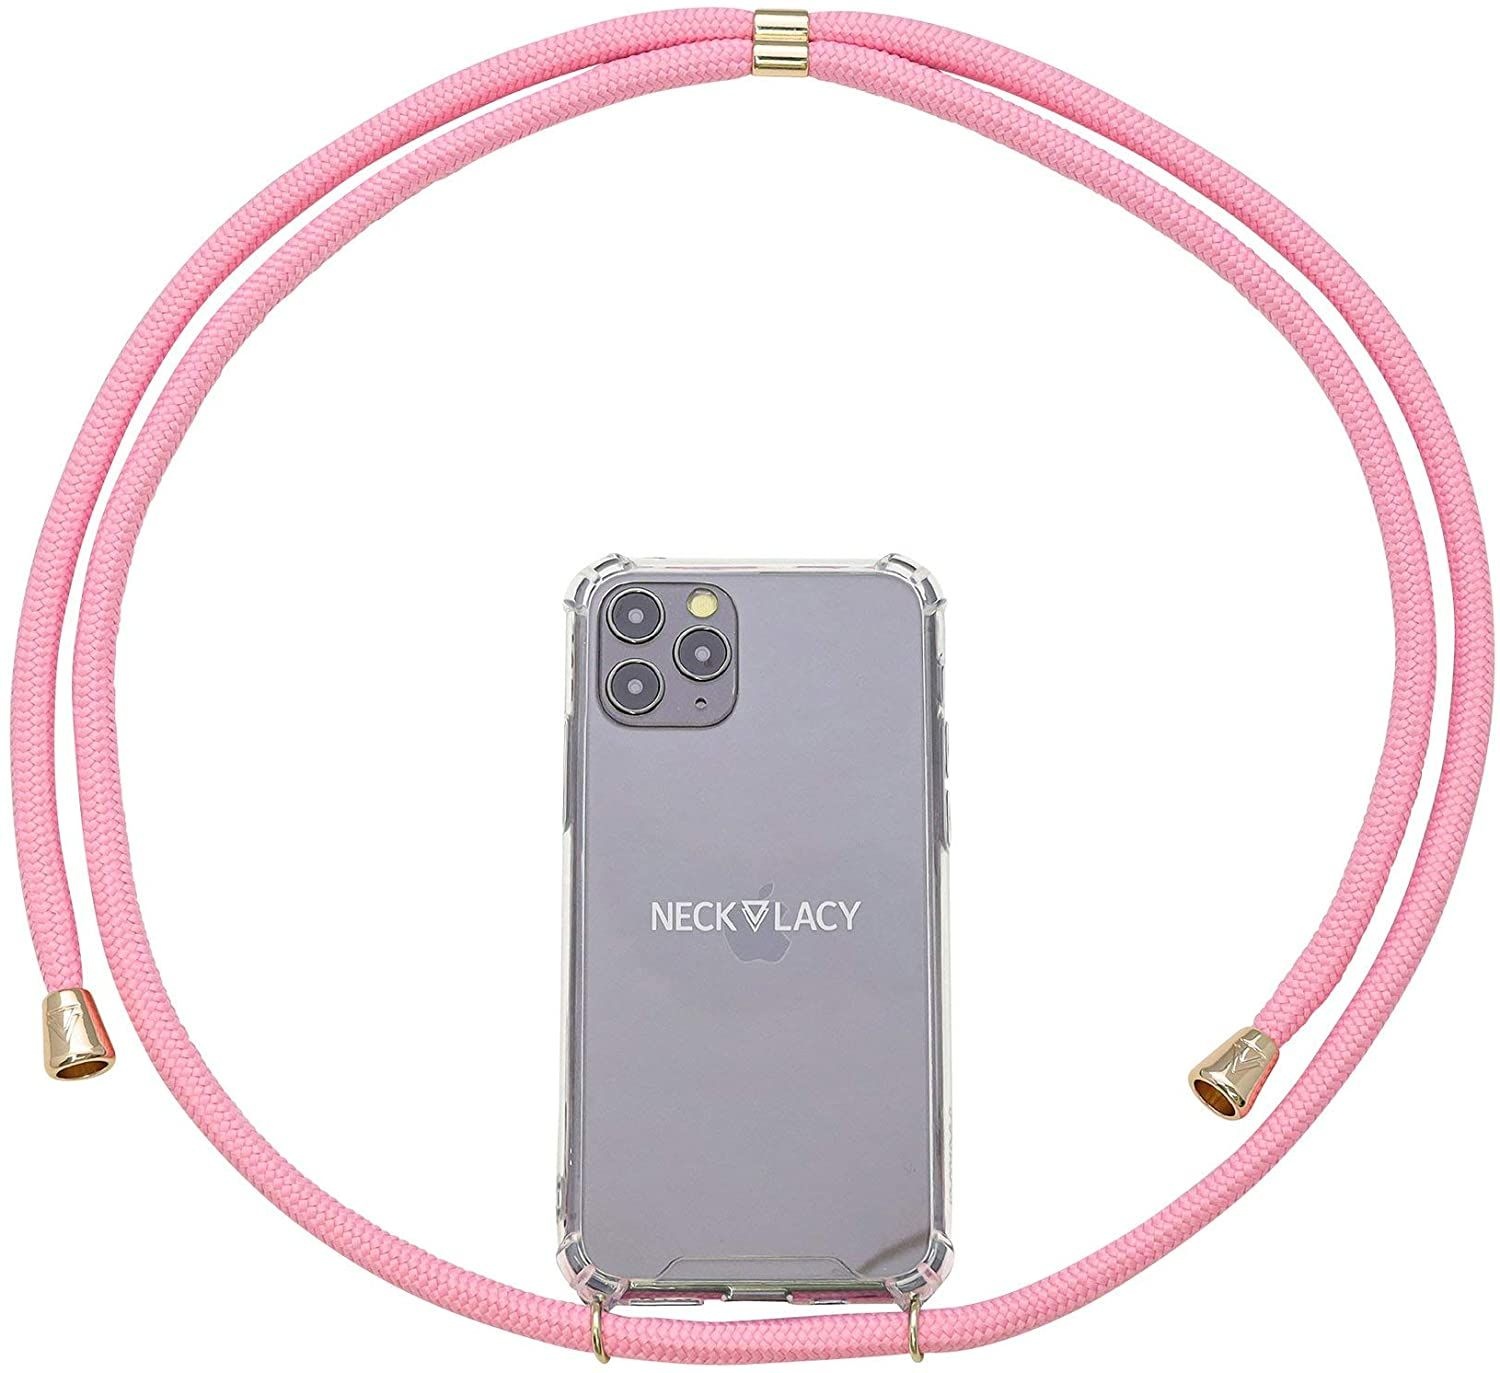 NECKLACY Handykette Handyhülle zum umhängen - für iPhone 7/8 - Case / Handyhülle mit Band zum umhängen - Trageband Hals mit Kordel - Smartphone Necklace, Cotton Candy